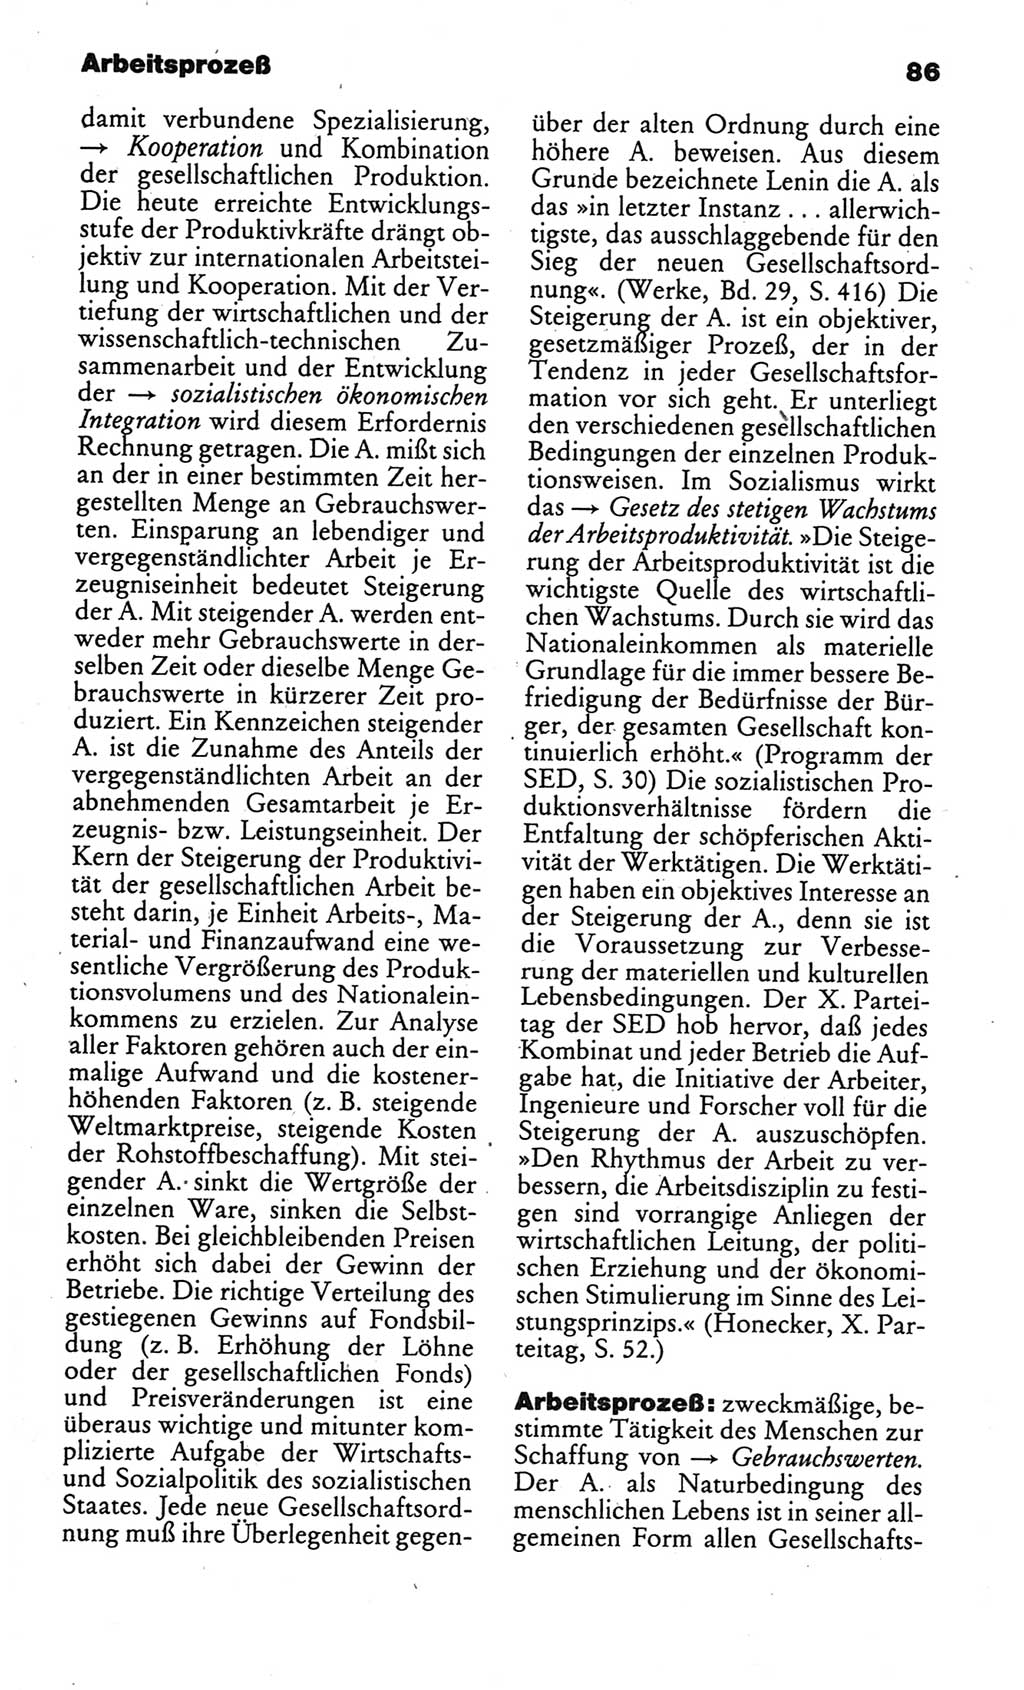 Kleines politisches Wörterbuch [Deutsche Demokratische Republik (DDR)] 1986, Seite 86 (Kl. pol. Wb. DDR 1986, S. 86)